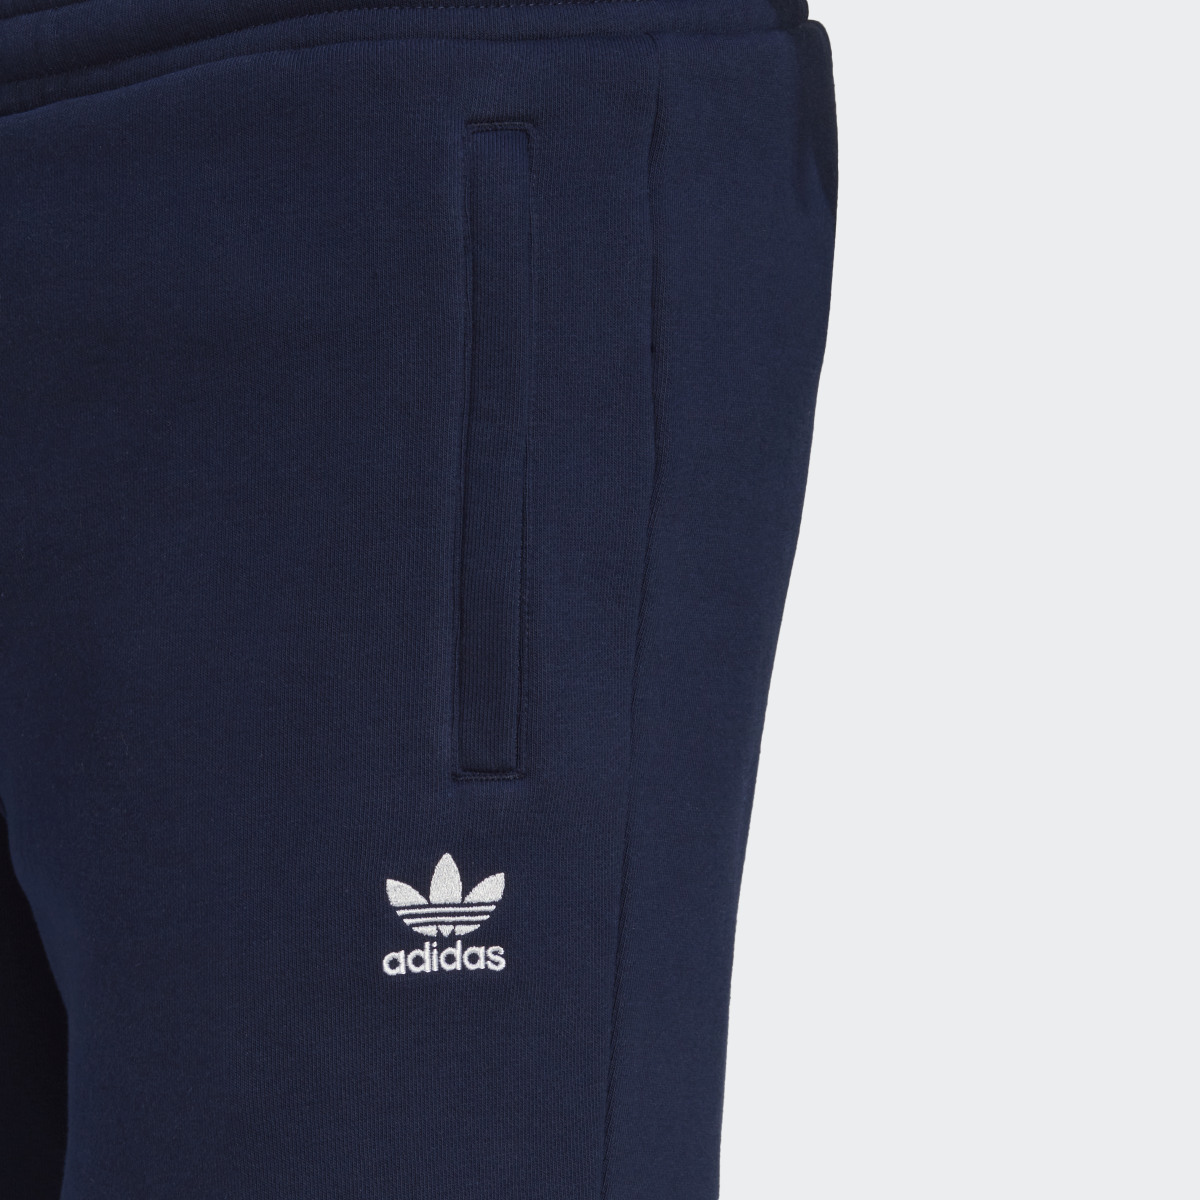 Adidas Adicolor Essentials Trefoil Shorts. 5